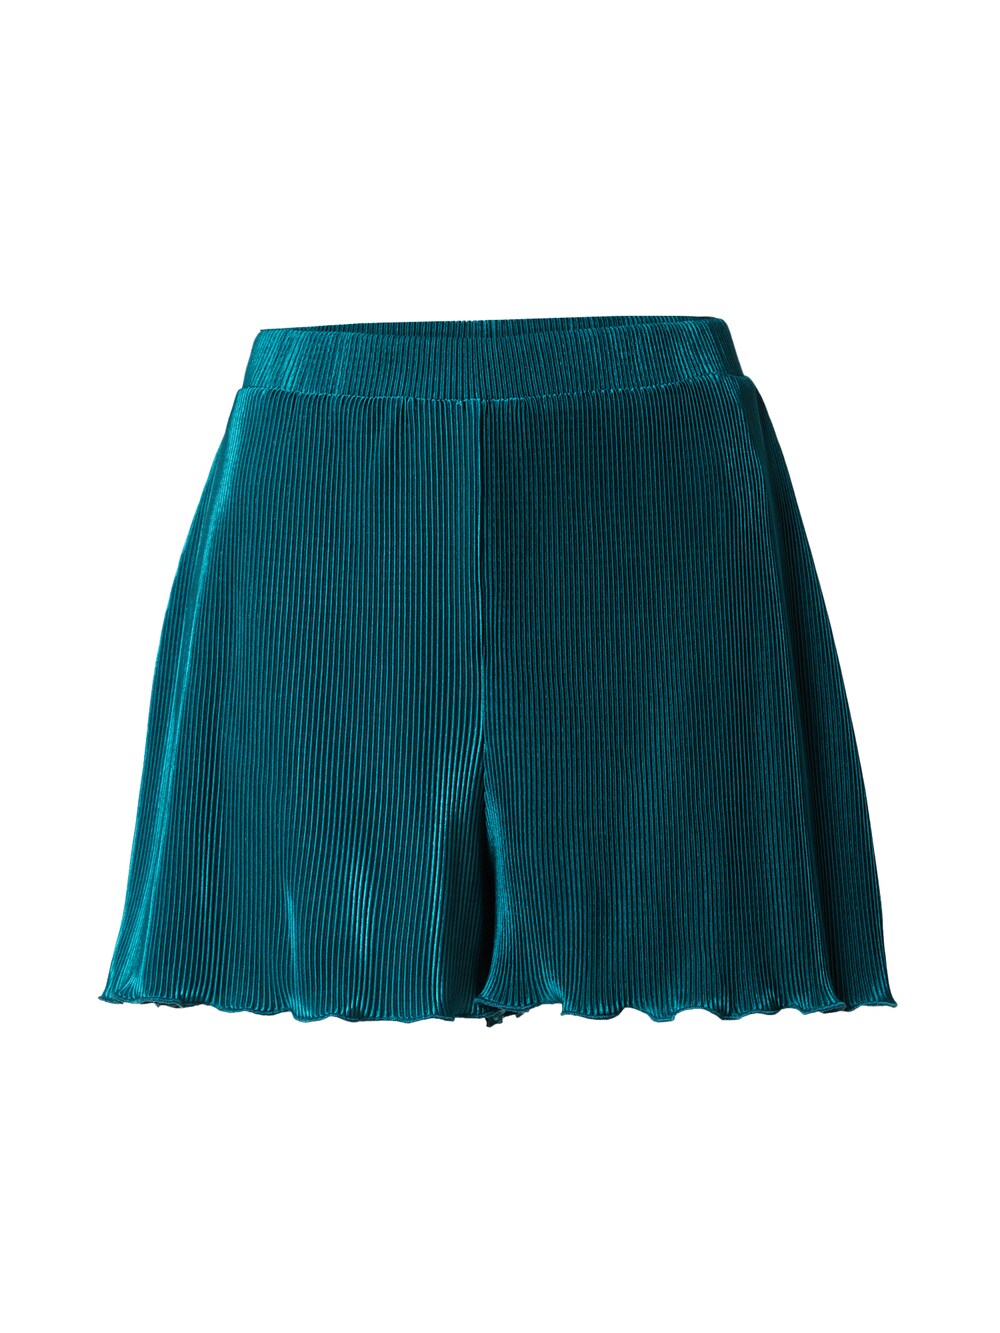 Обычные брюки ABOUT YOU Ilse, темно-зеленый обычные брюки about you rana темно синий